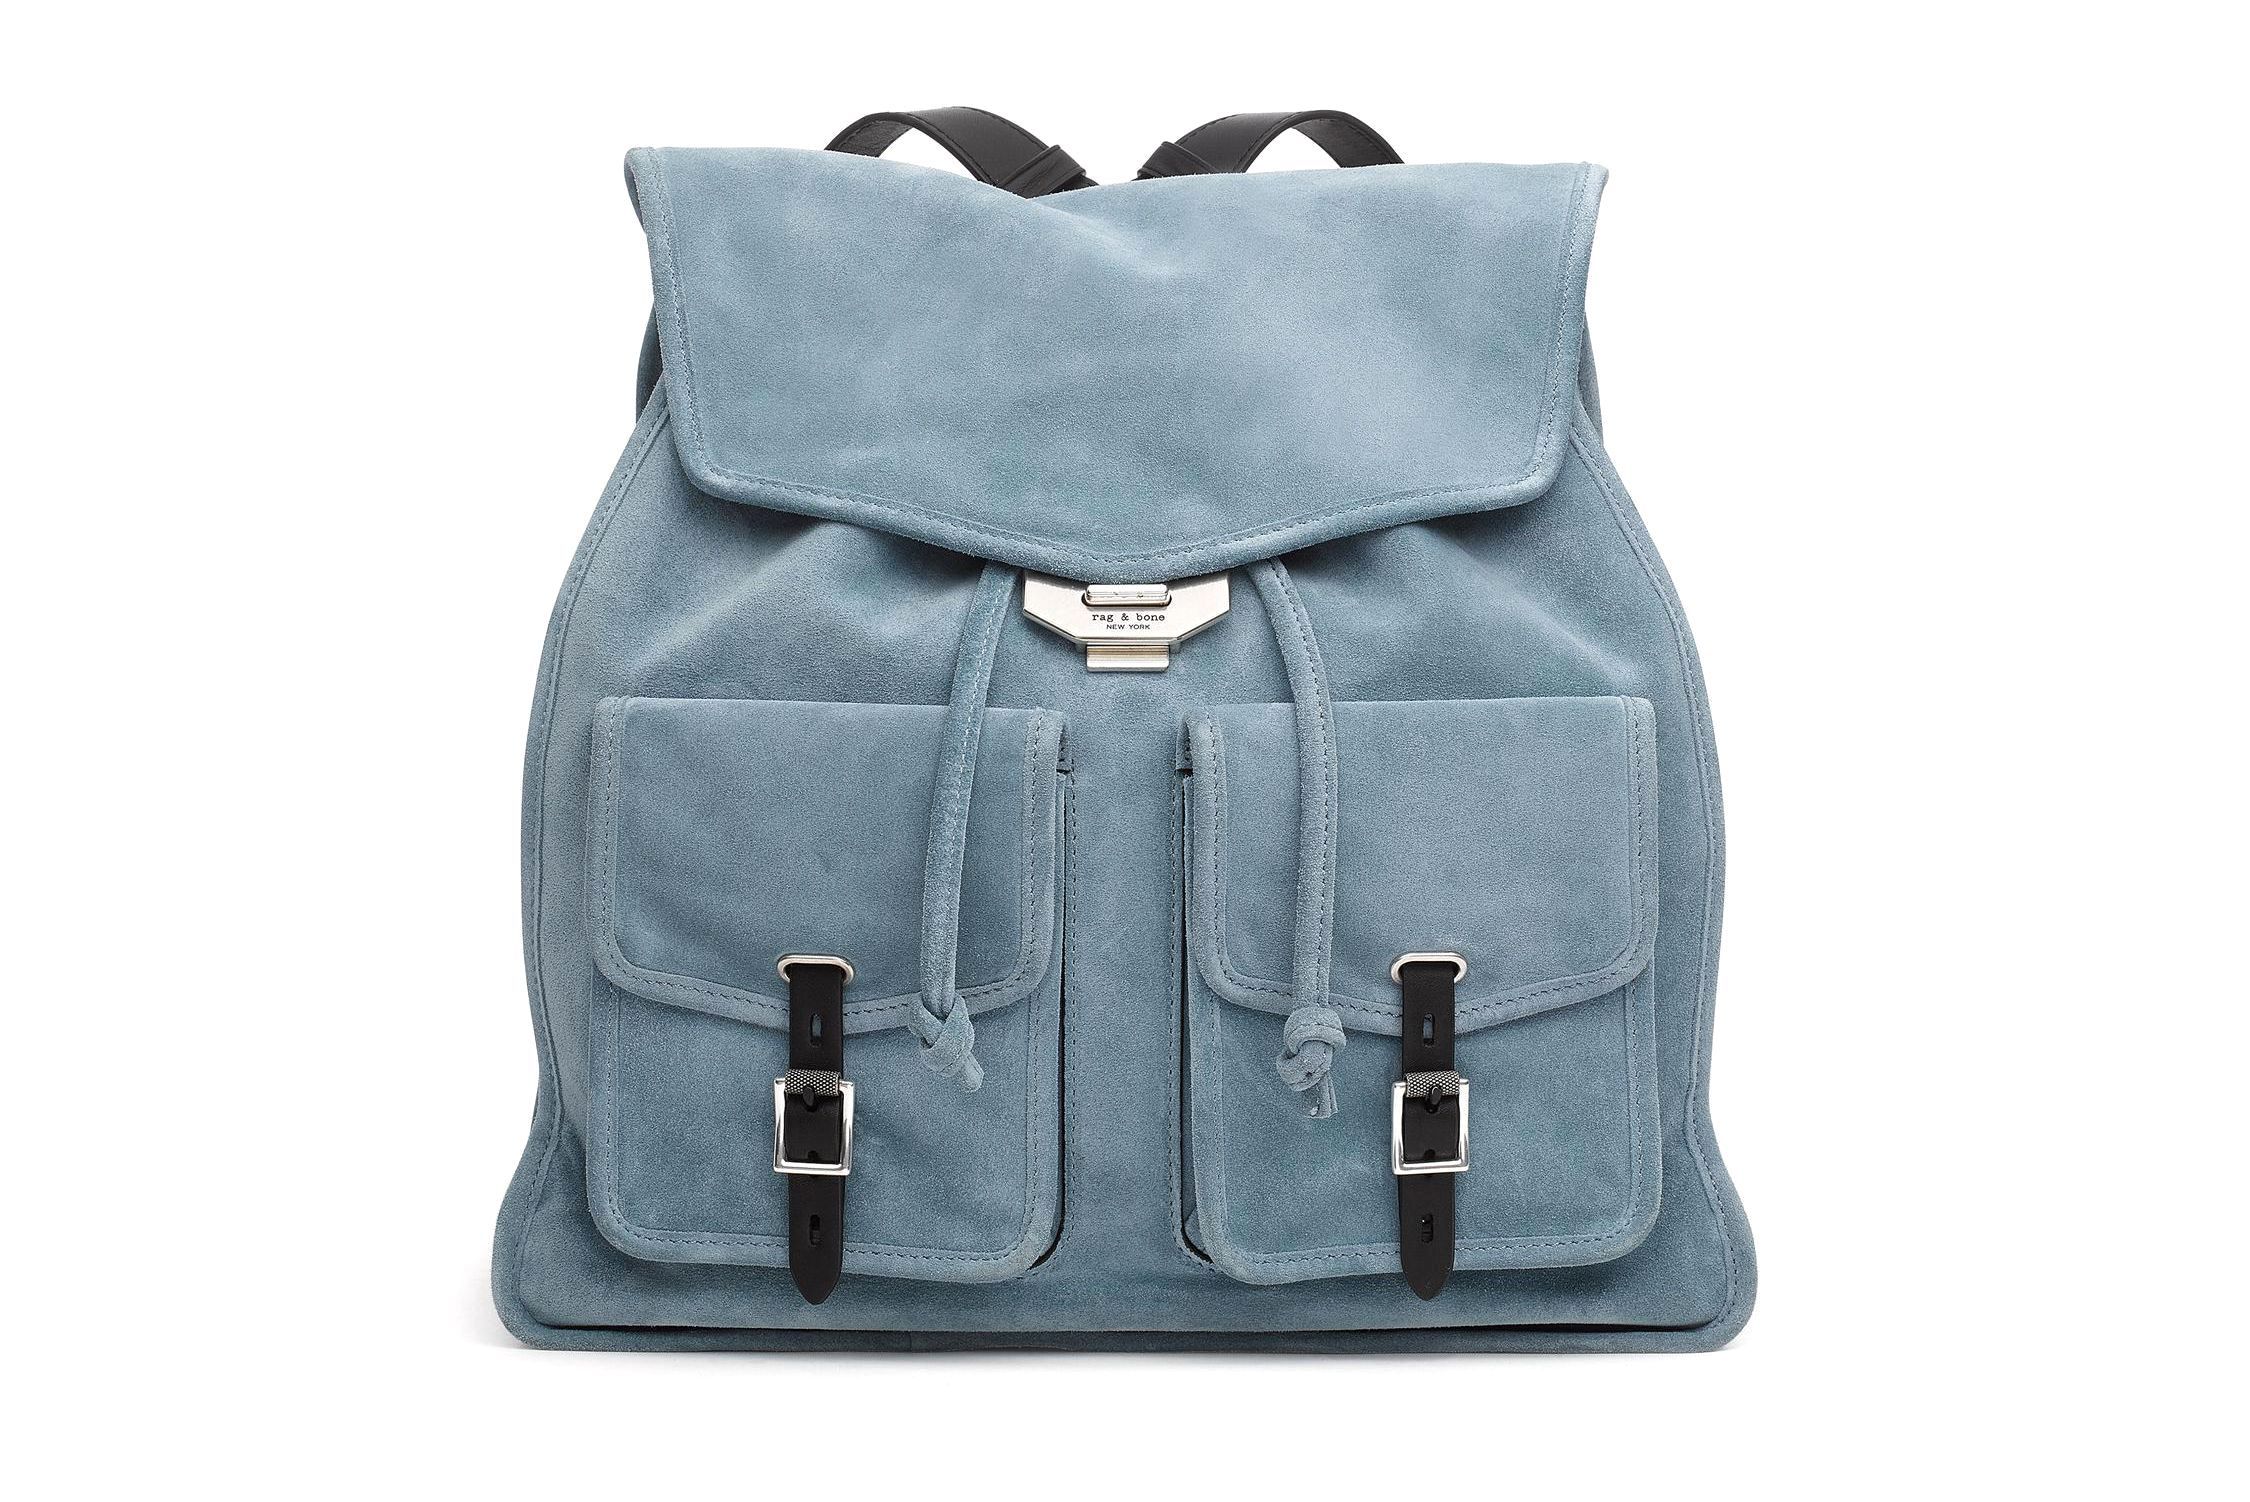 13 Best Stylish Backpacks for Women